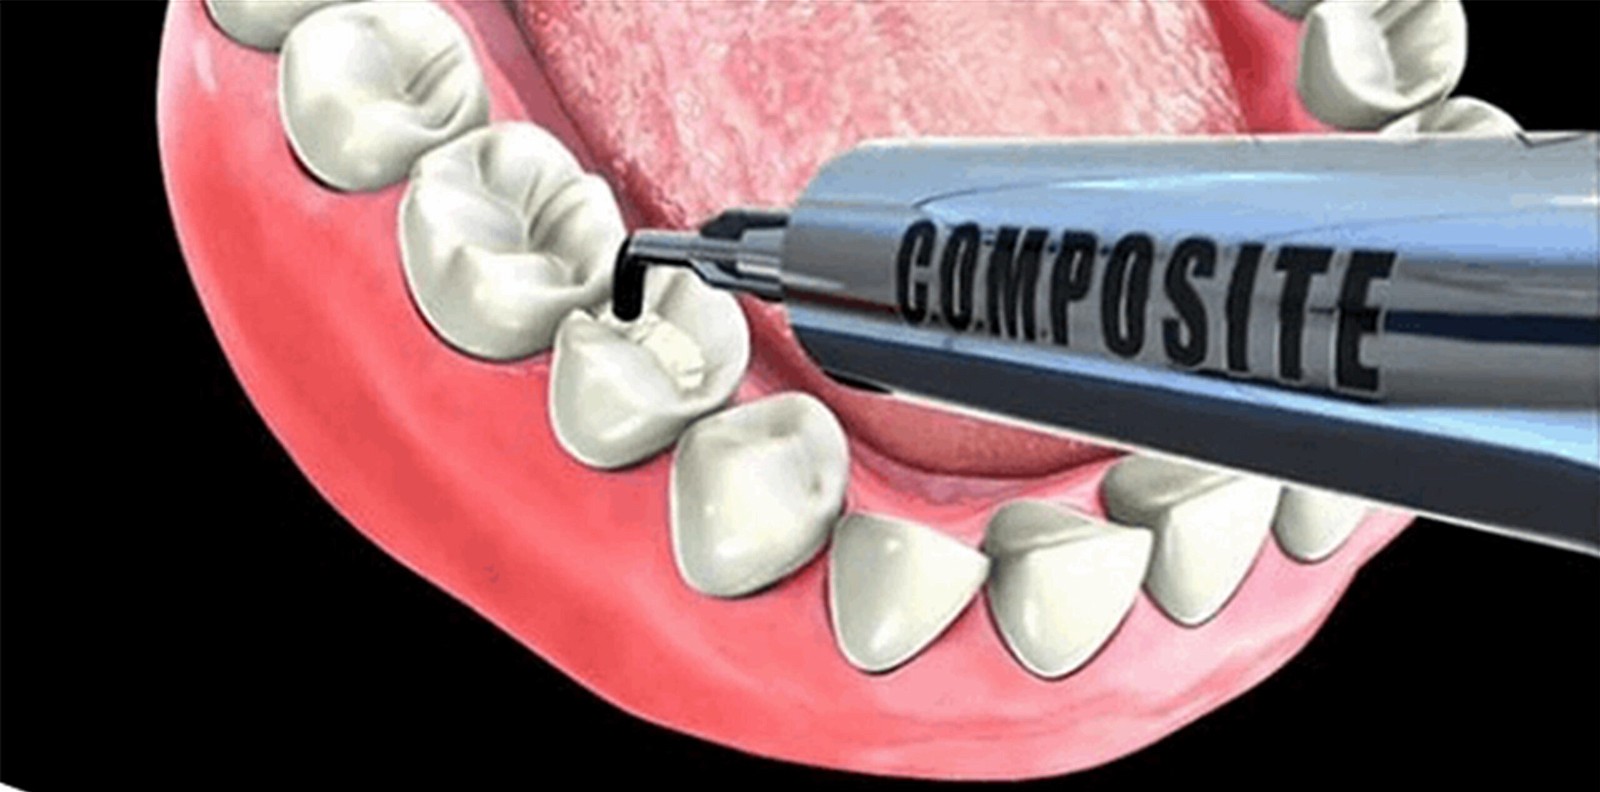 Composite trám răng là một trong những loại vật liệu trám răng hiện nay